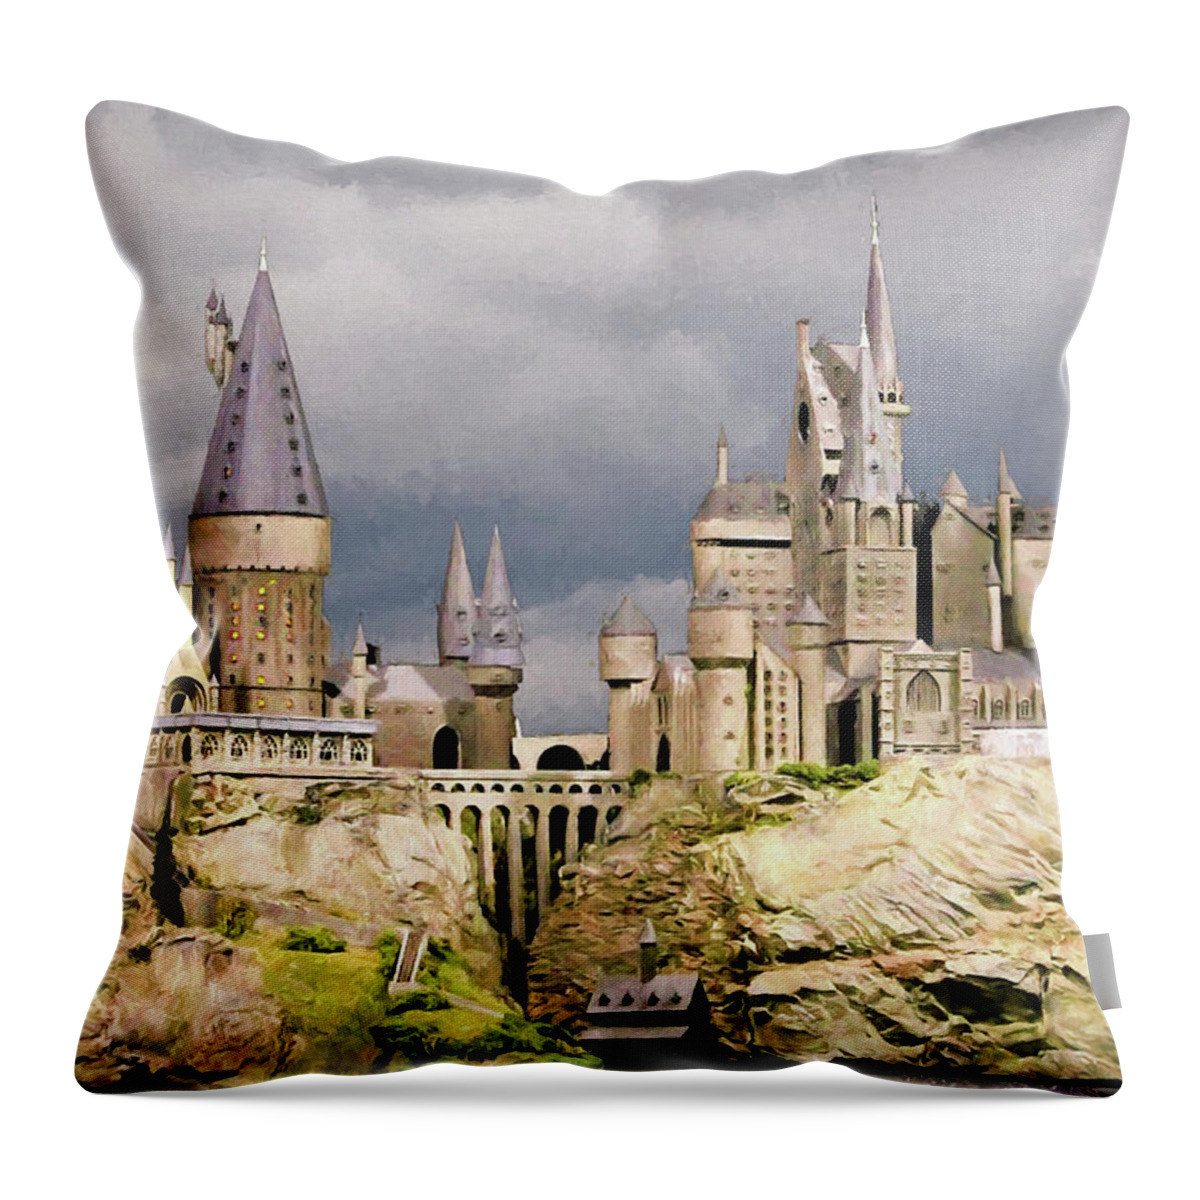 Harry Potter Throw Pillow featuring the digital art Digital Hogwarts School by Roy Pedersen